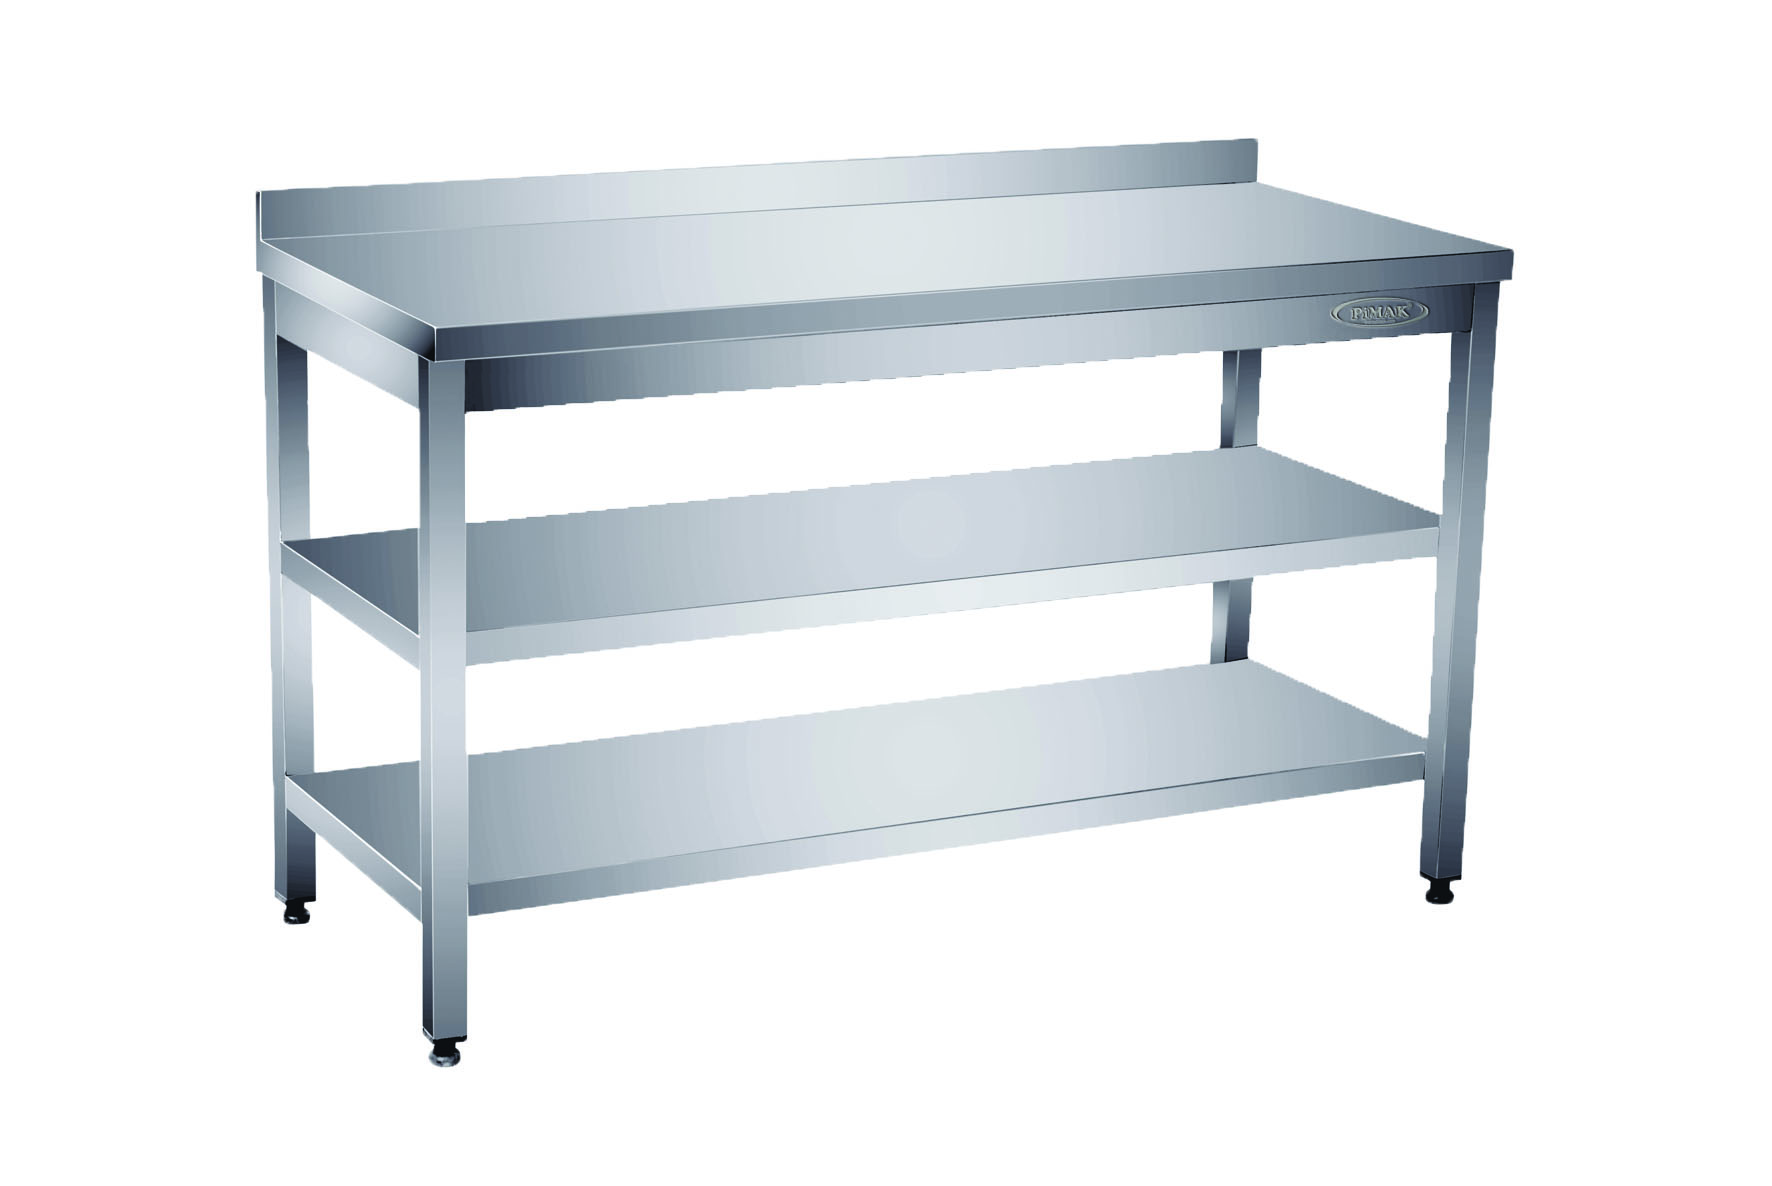 Table inox avec double étagère basse - 70 cm de profondeur - Avec dosseret